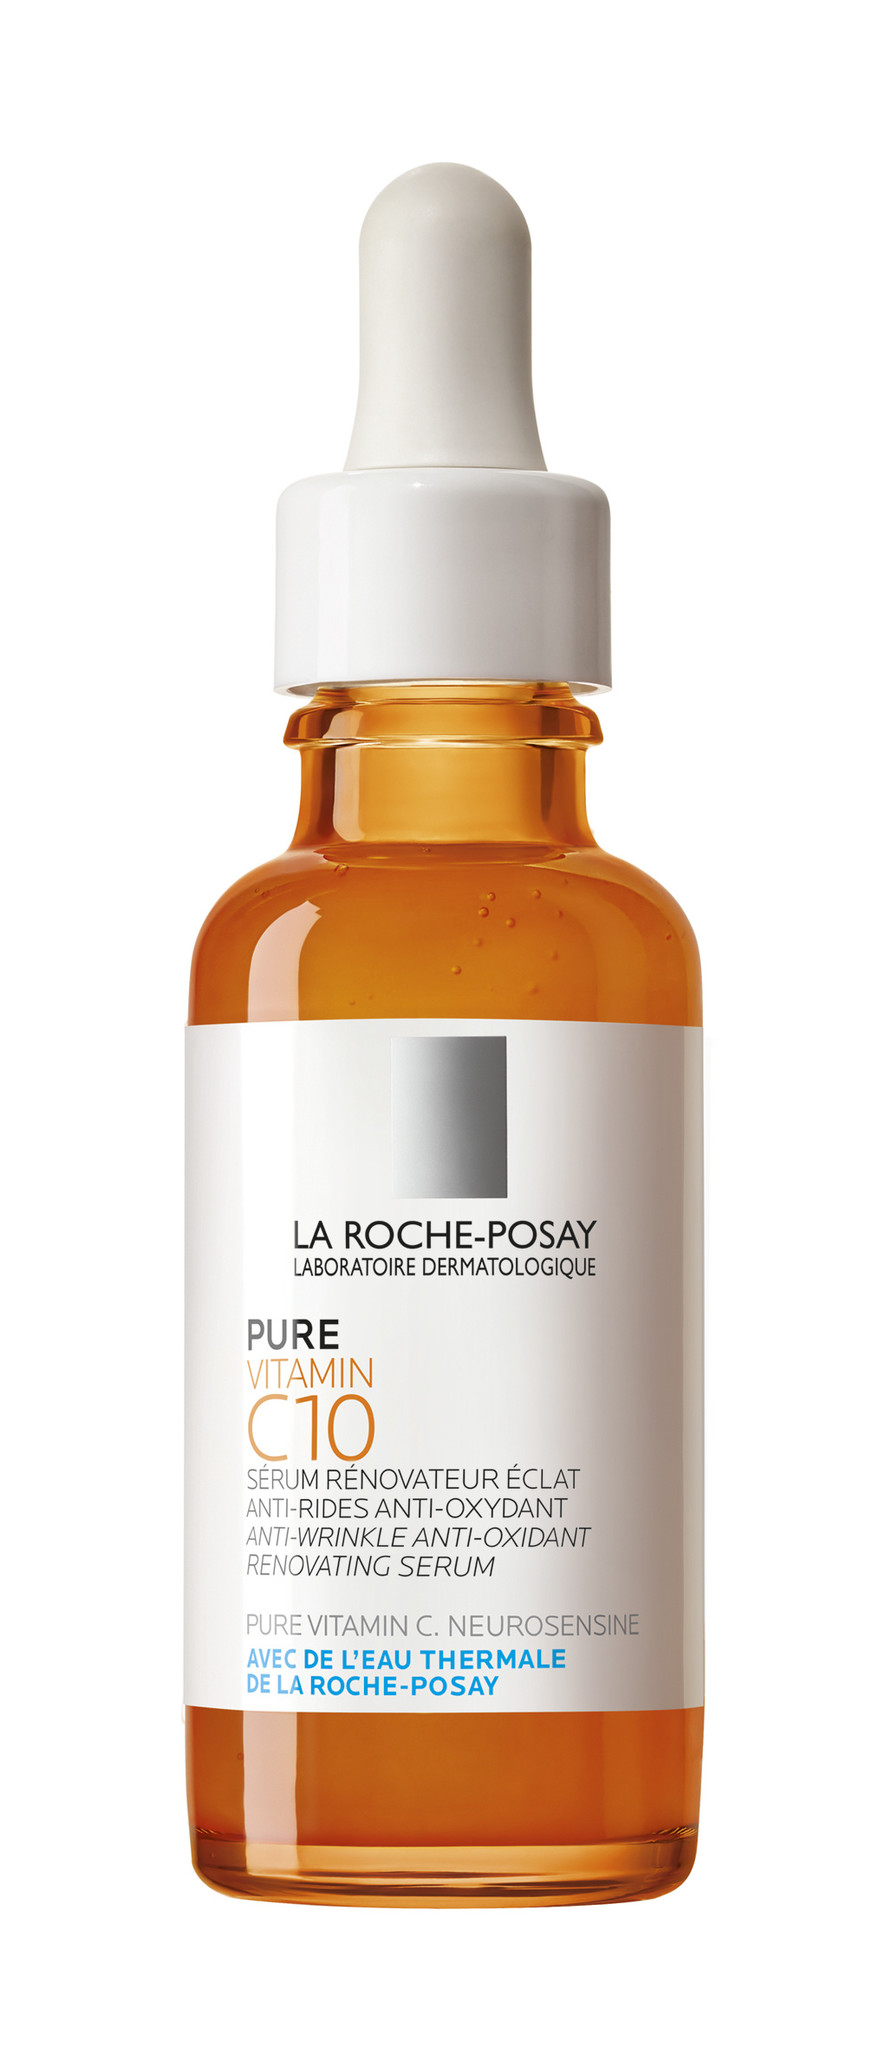 La Roche-Posay Pure Vitamin C10 Serum